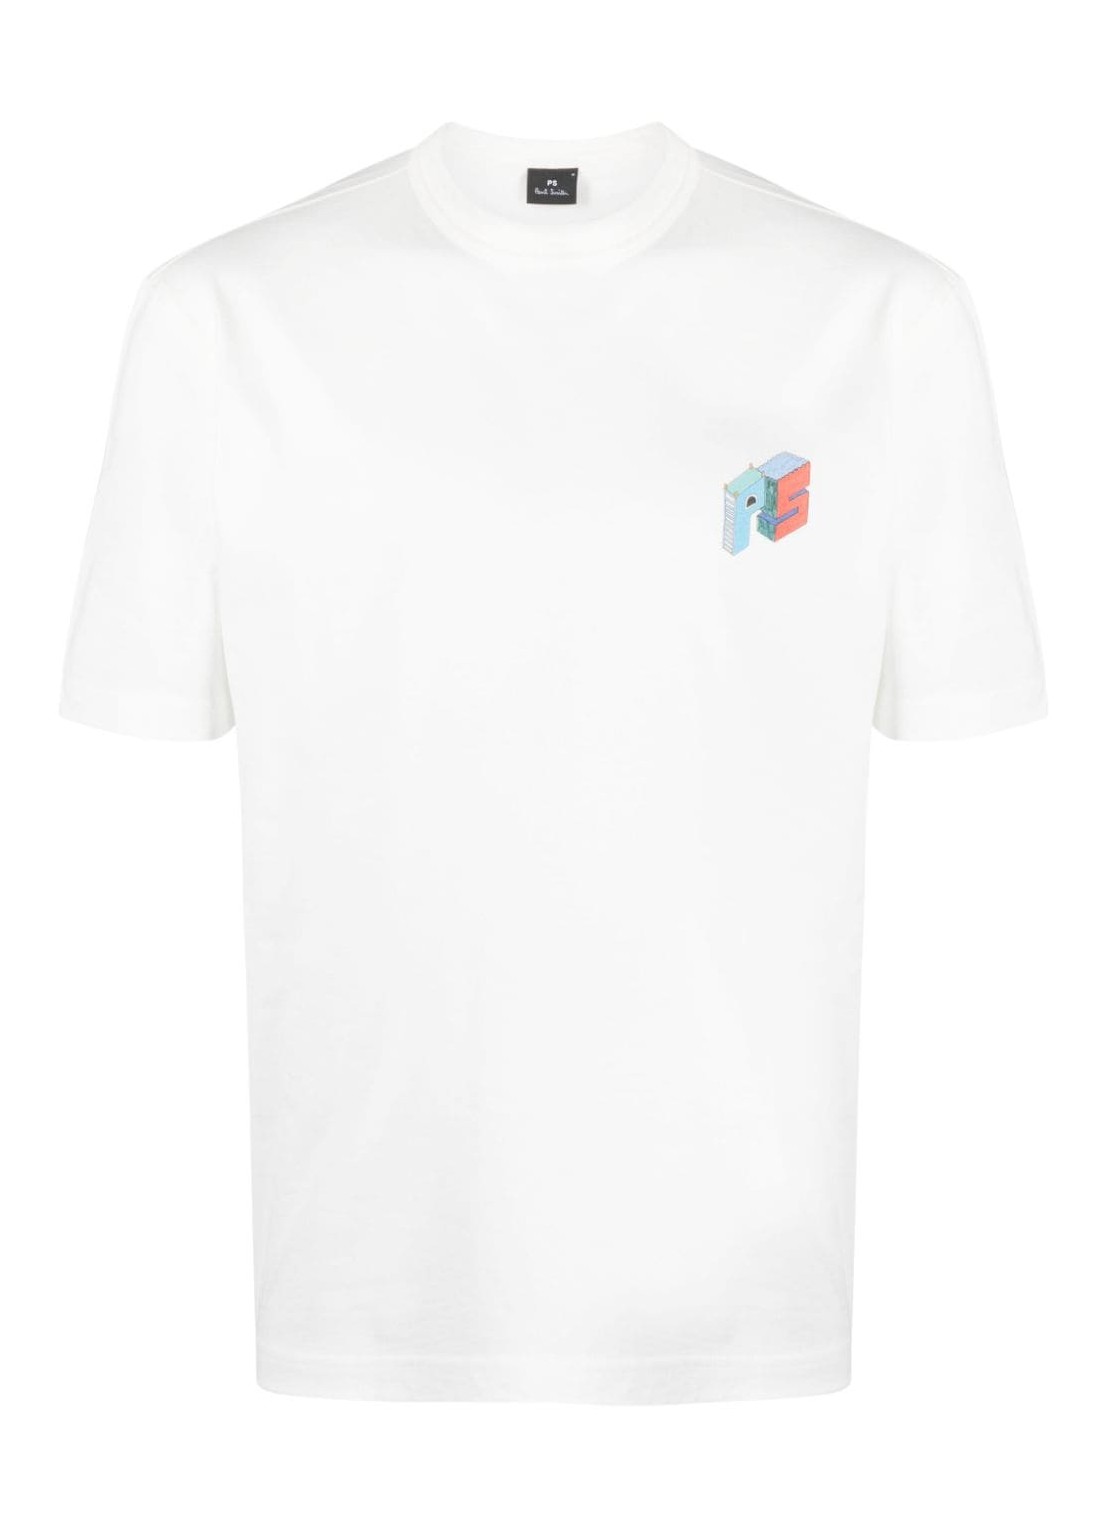 Camiseta ps t-shirt man mens ss tshirt jacks world m2r220xmp4356 02 talla blanco
 